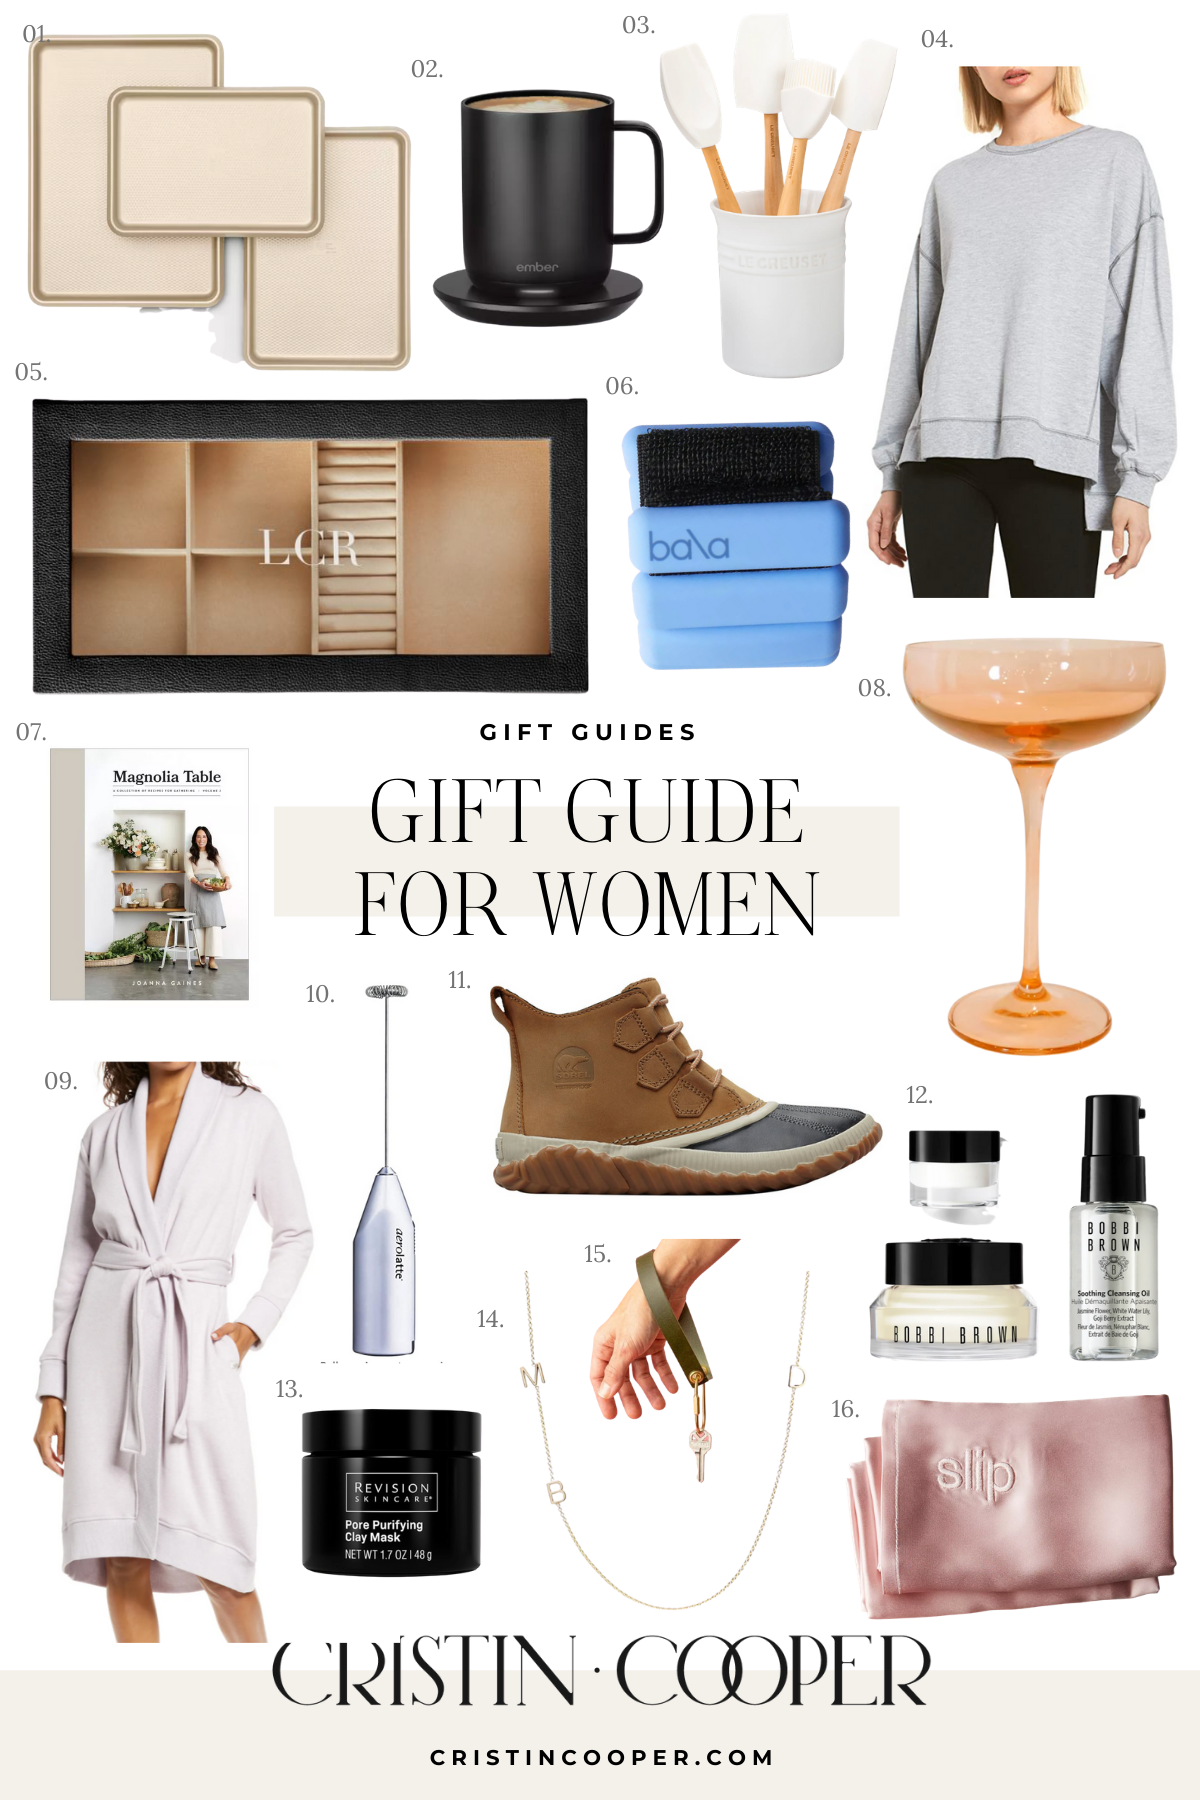 Blogger Cristin Cooper shares her gift guide for women